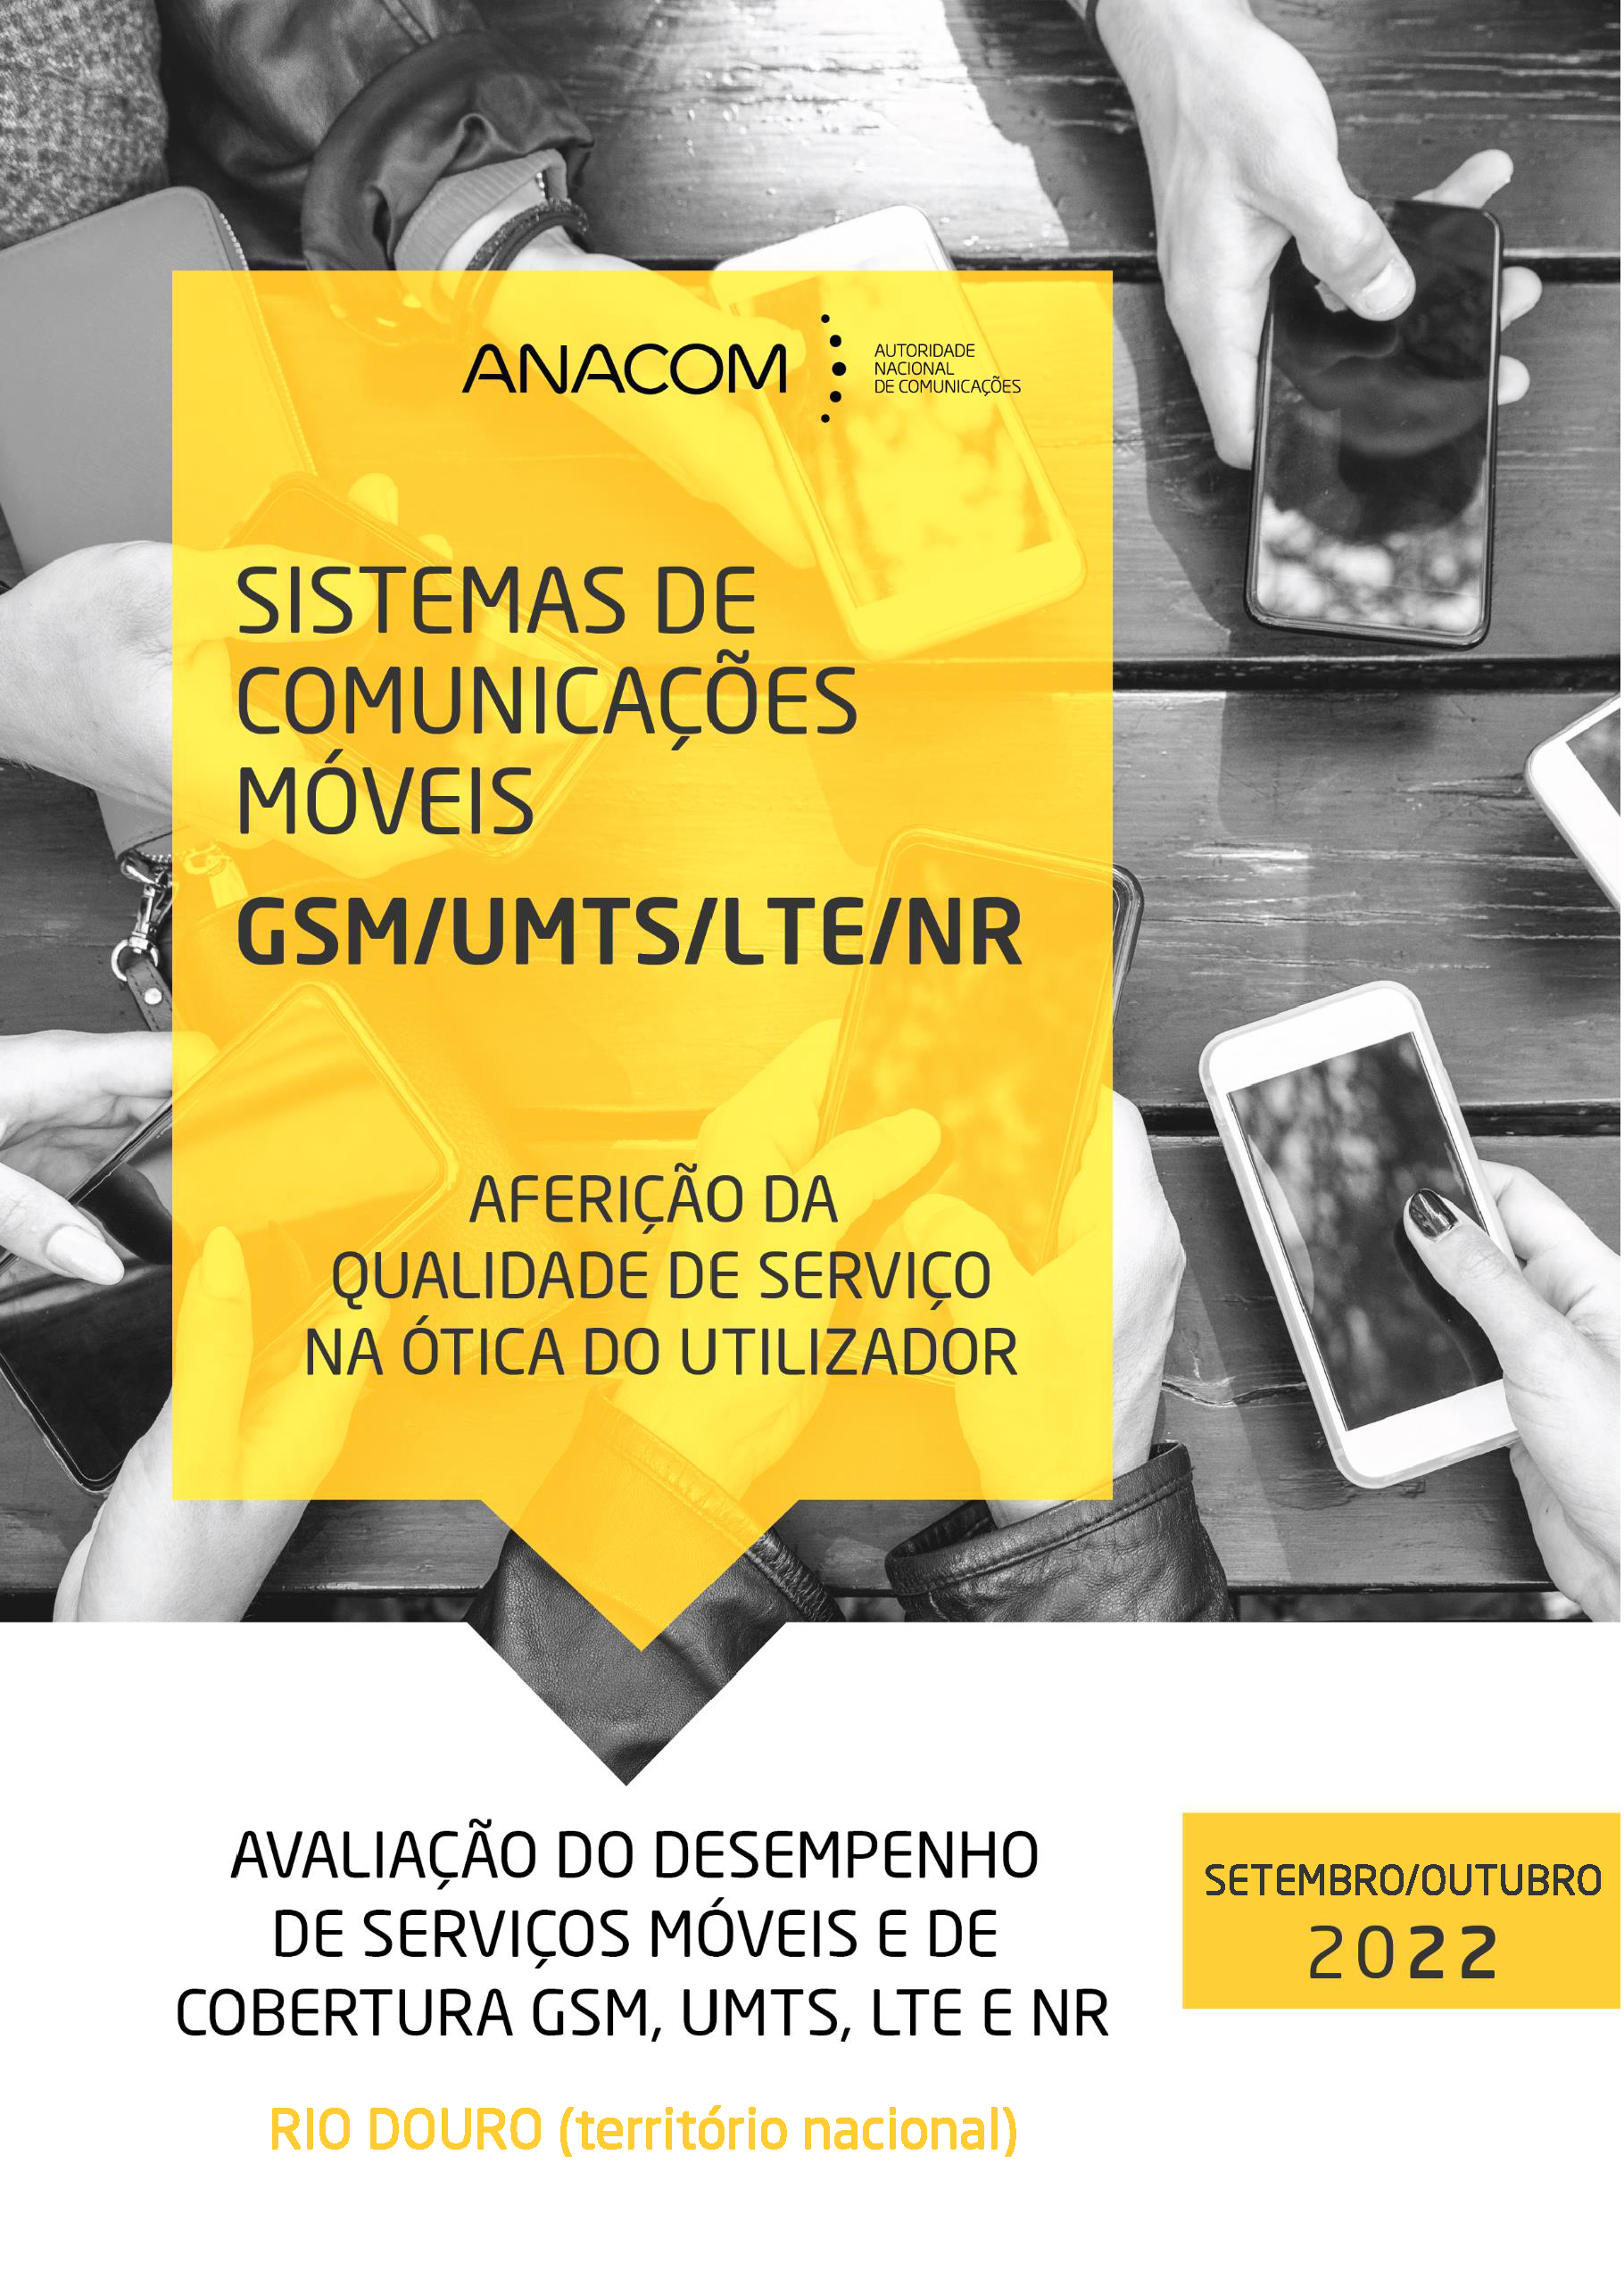 Avaliação do desempenho de serviços móveis e de cobertura GSM, UMTS, LTE e NR no Rio Douro